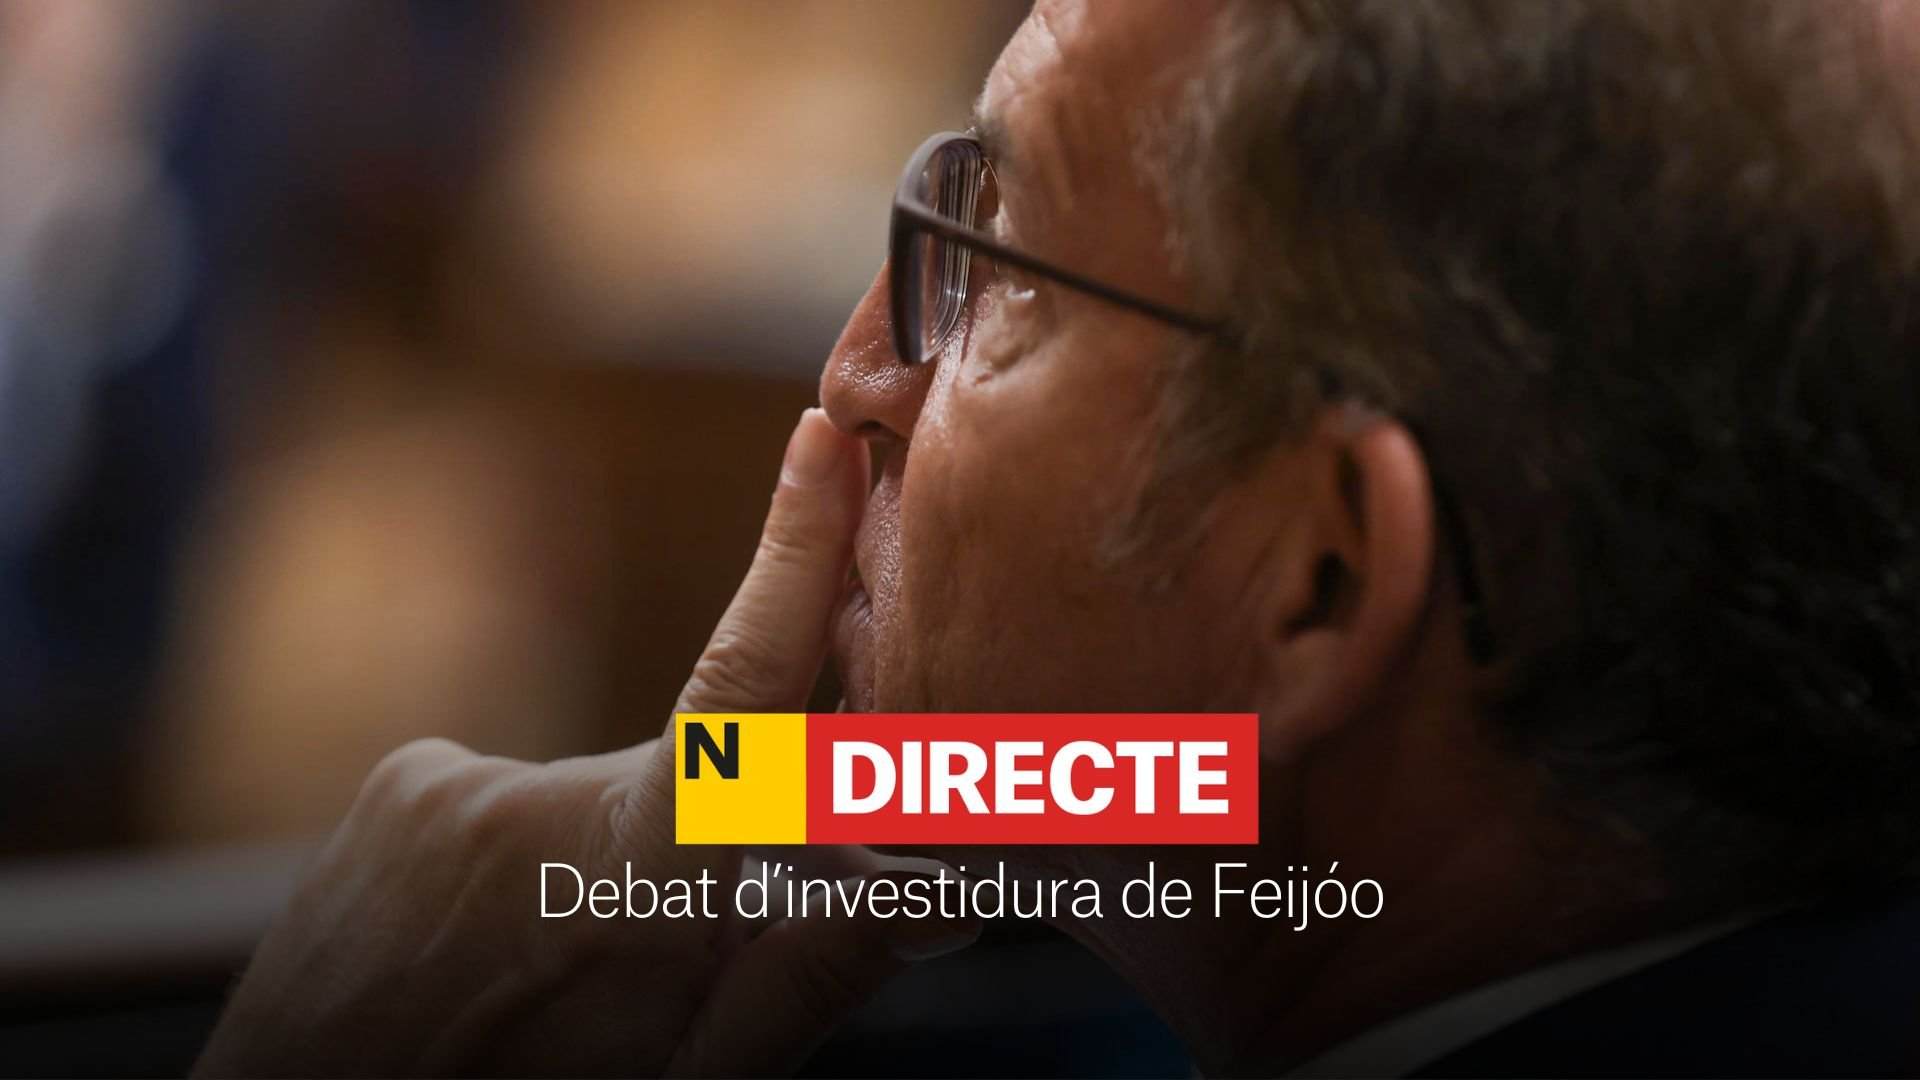 Investidura de Feijóo, DIRECTE | Discursos i última hora del debat al Congrés dels Diputats